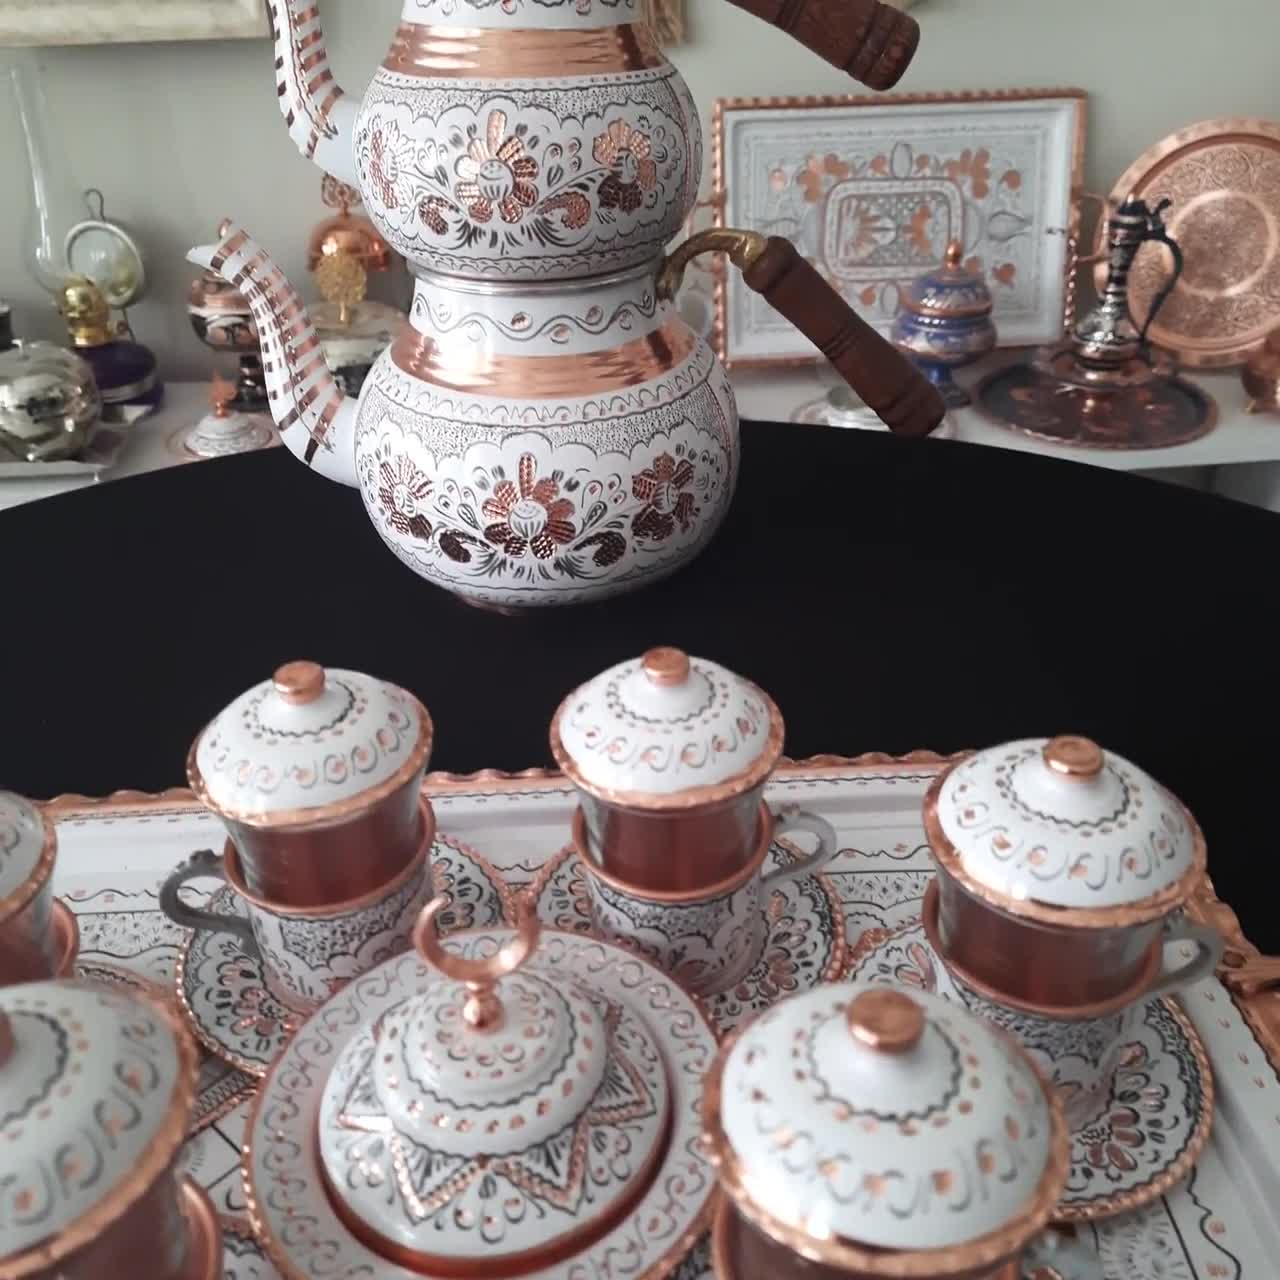 Auténtico arte del té turco: juego de tetera de cobre hecha a mano con  grabados, diseño de doble caldera, cobre de 0.039 in de grosor y elegancia